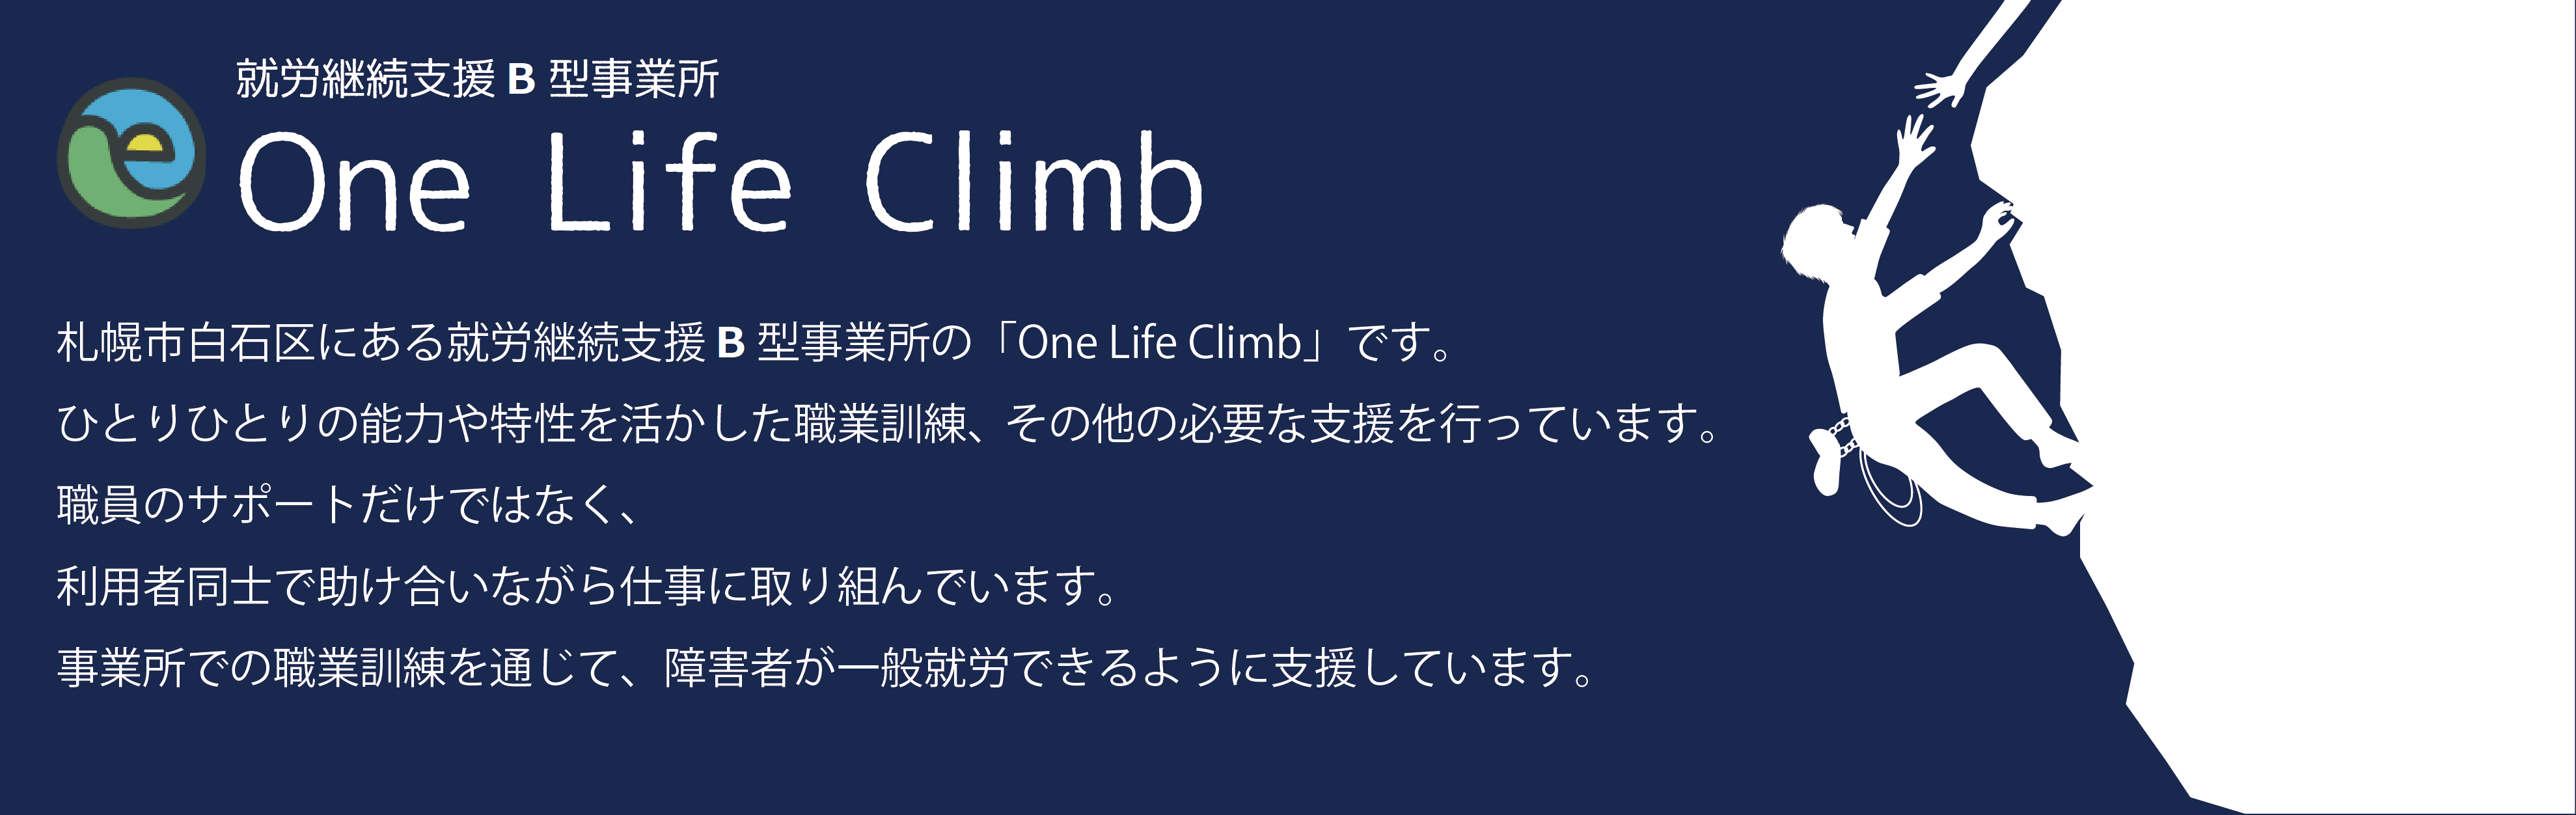 One Life Climb